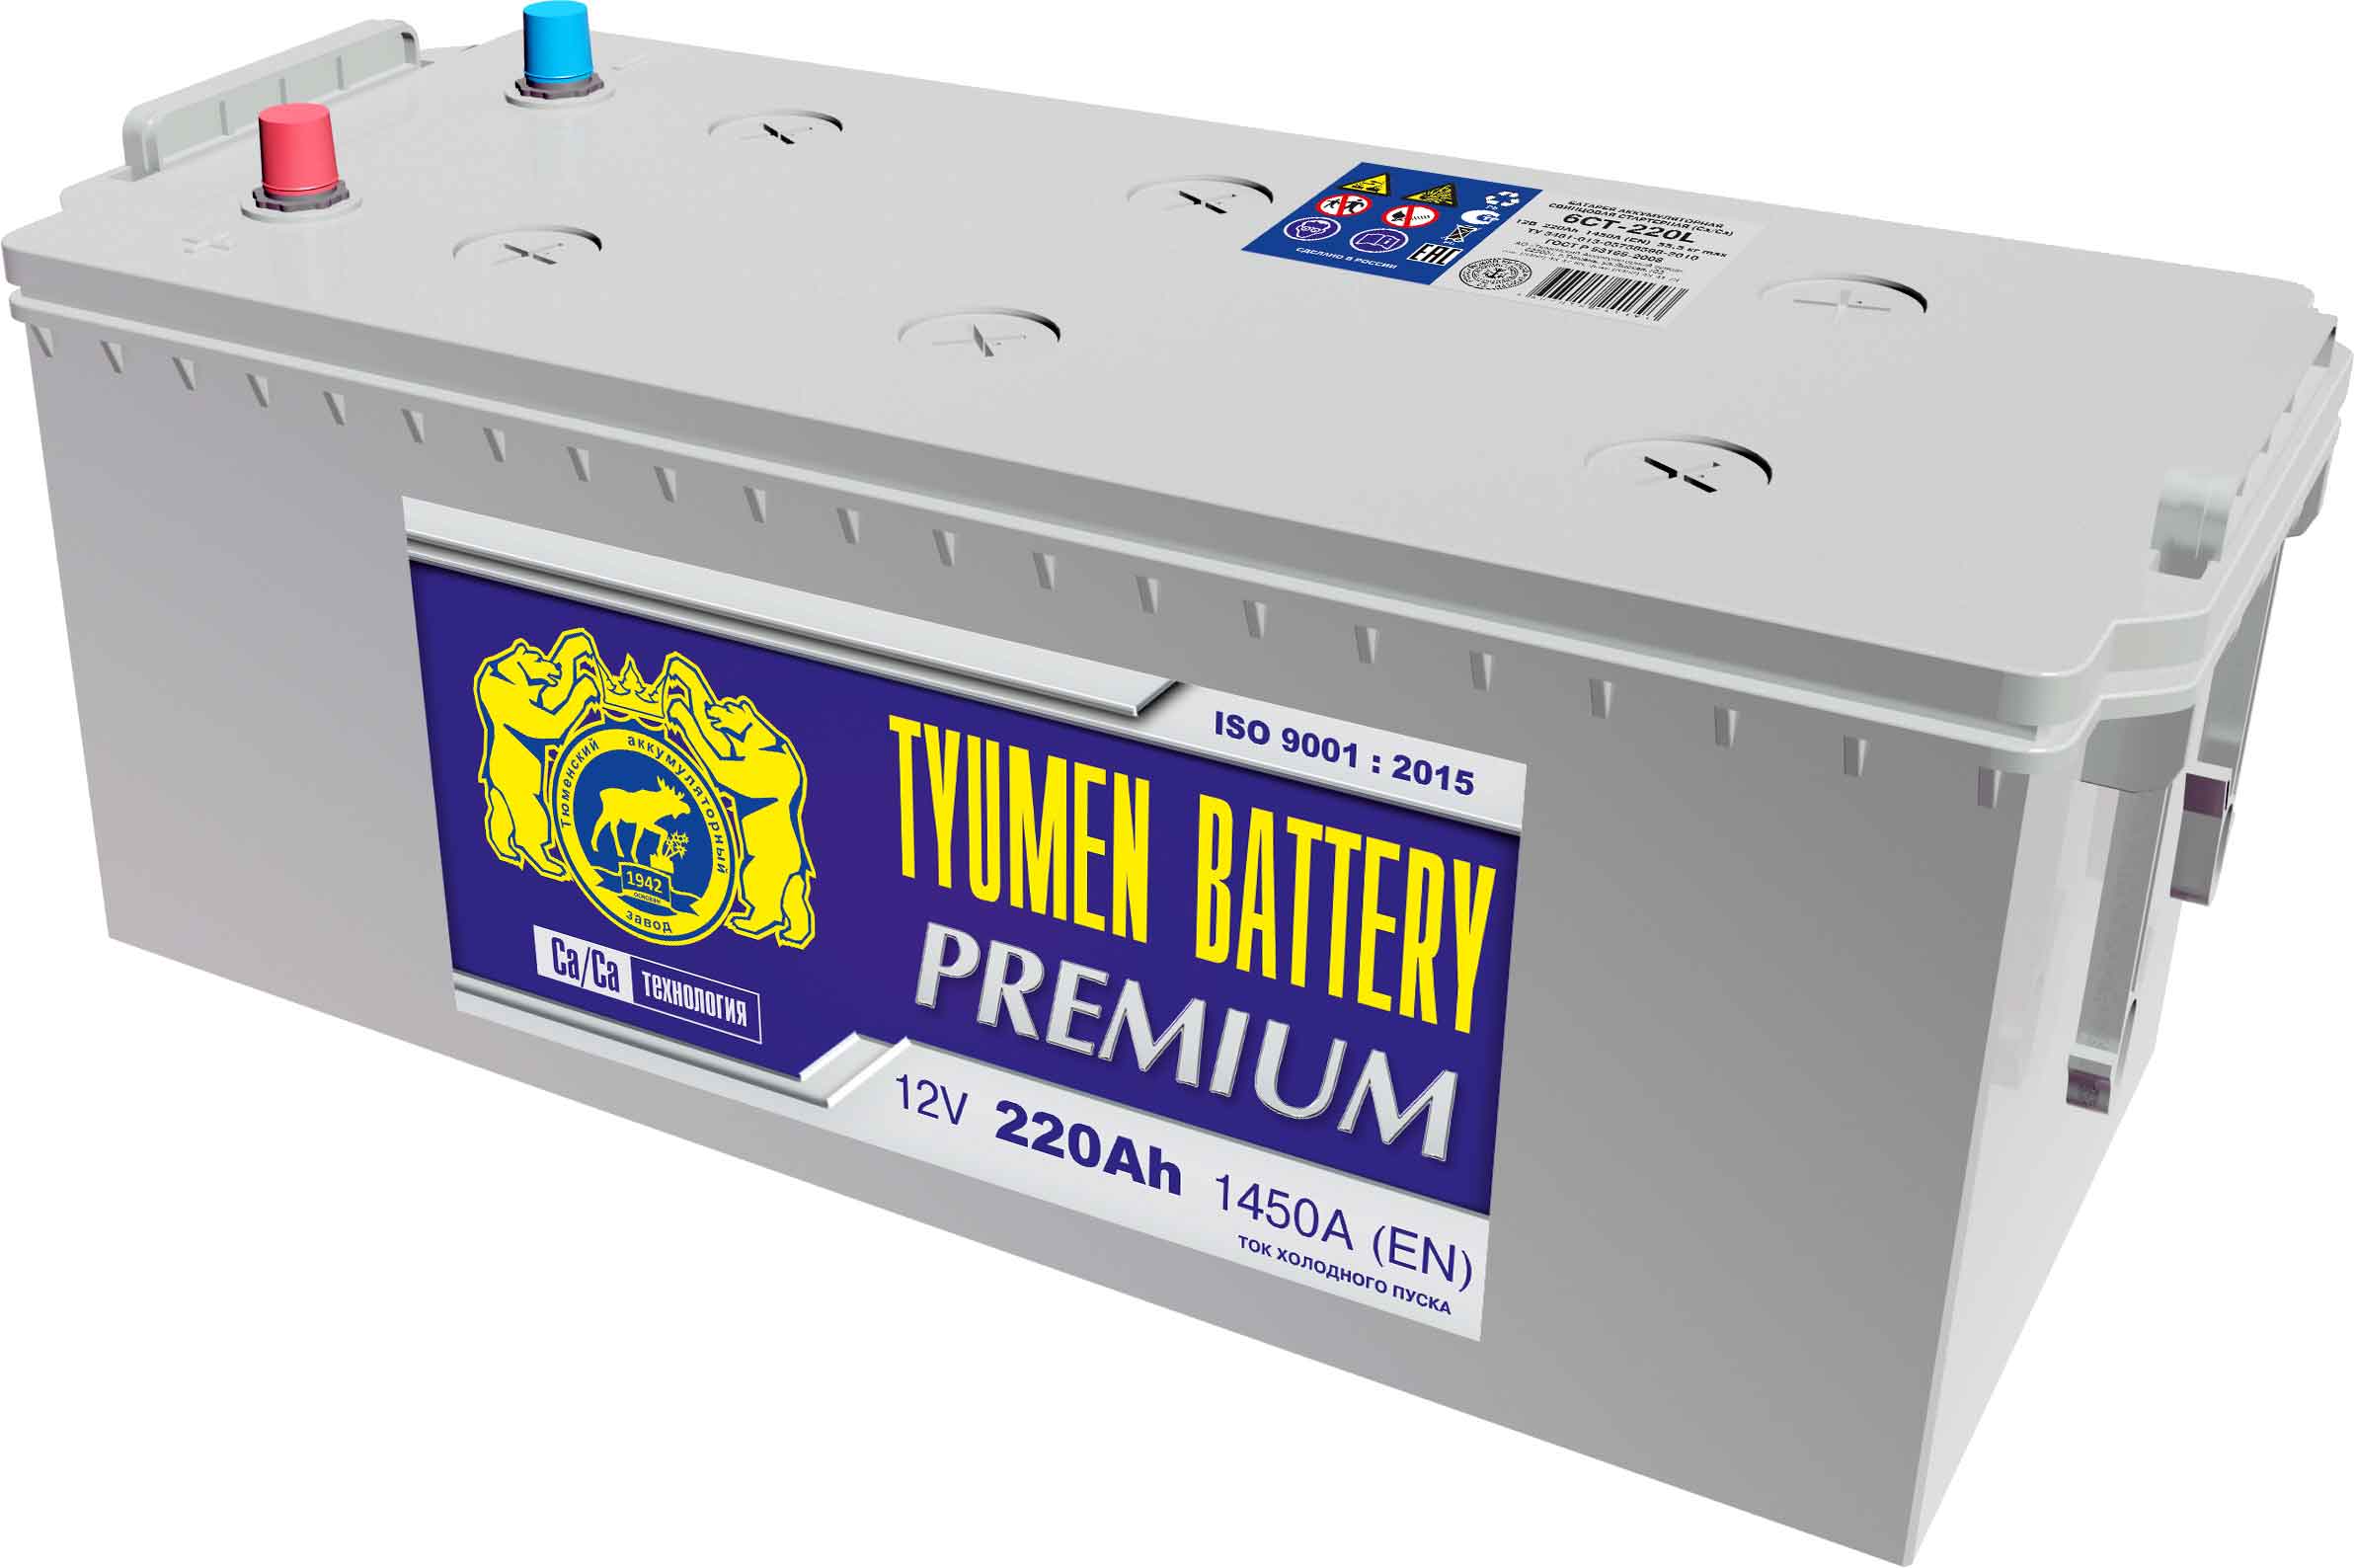 Автомобильный аккумулятор Tyumen Battery 6ст-220L Premium, 220Ач, 1450 EN, евро., обр.